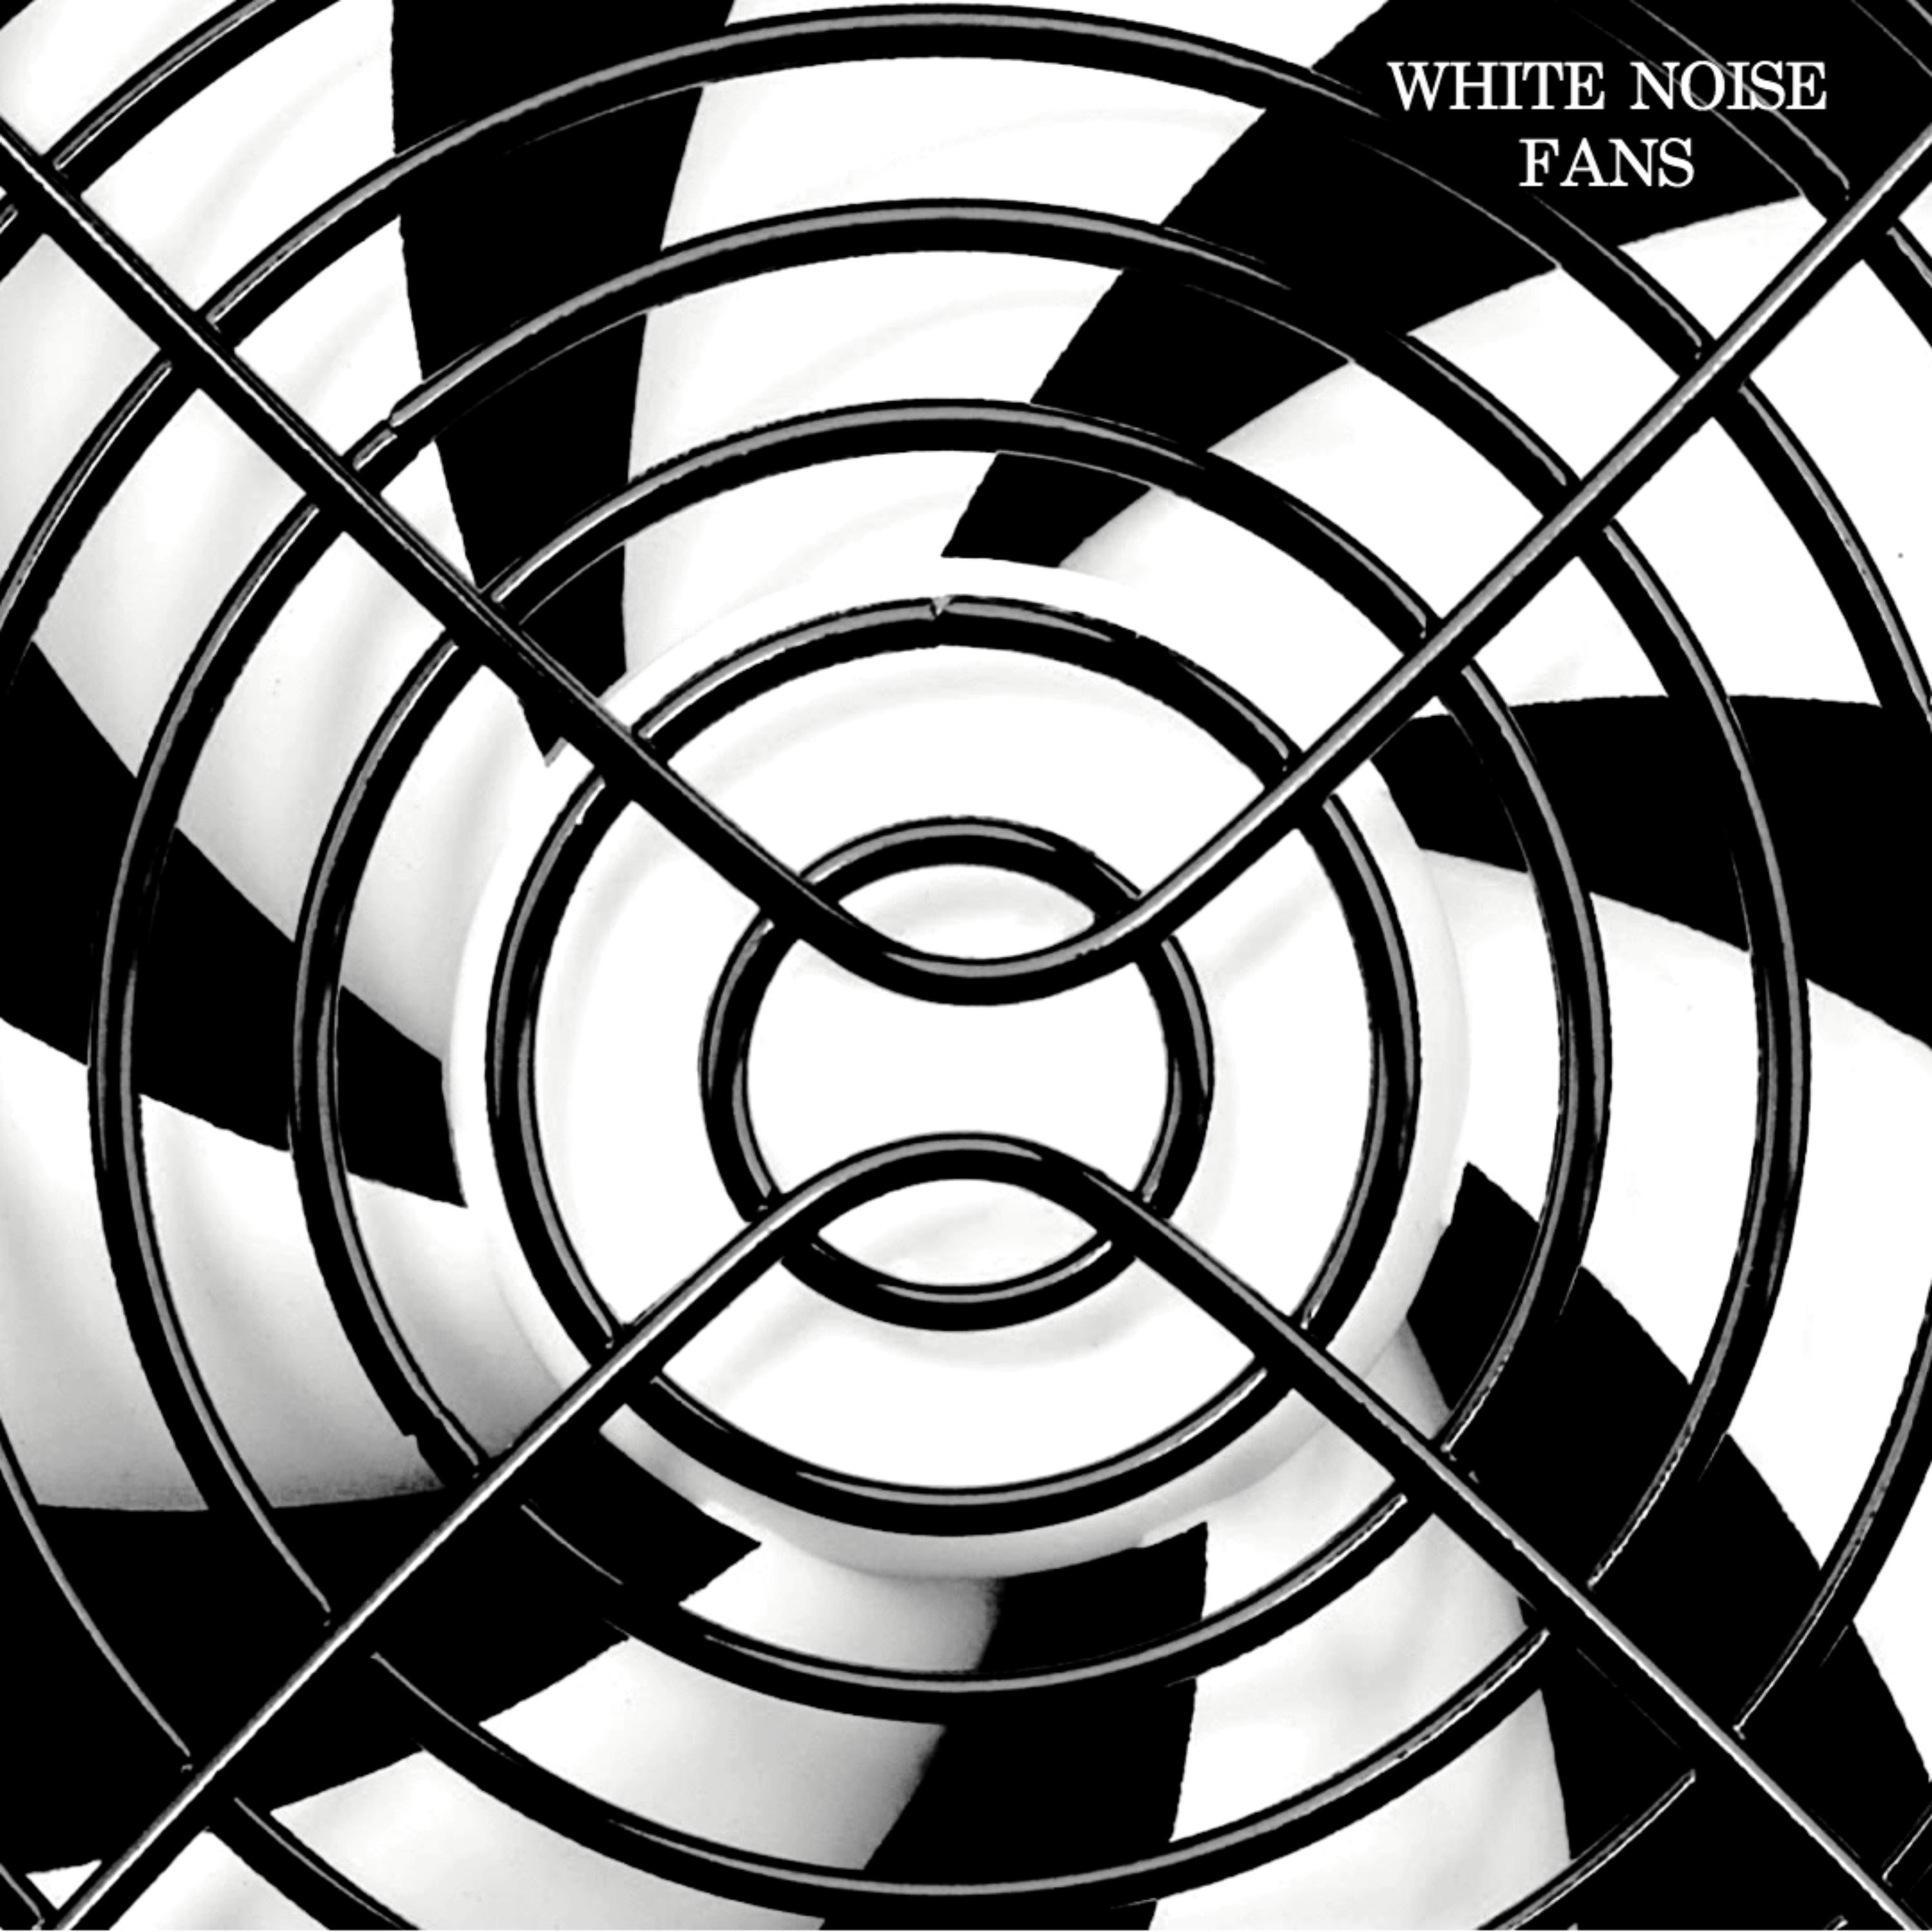 White Noise: Power Plant Fan